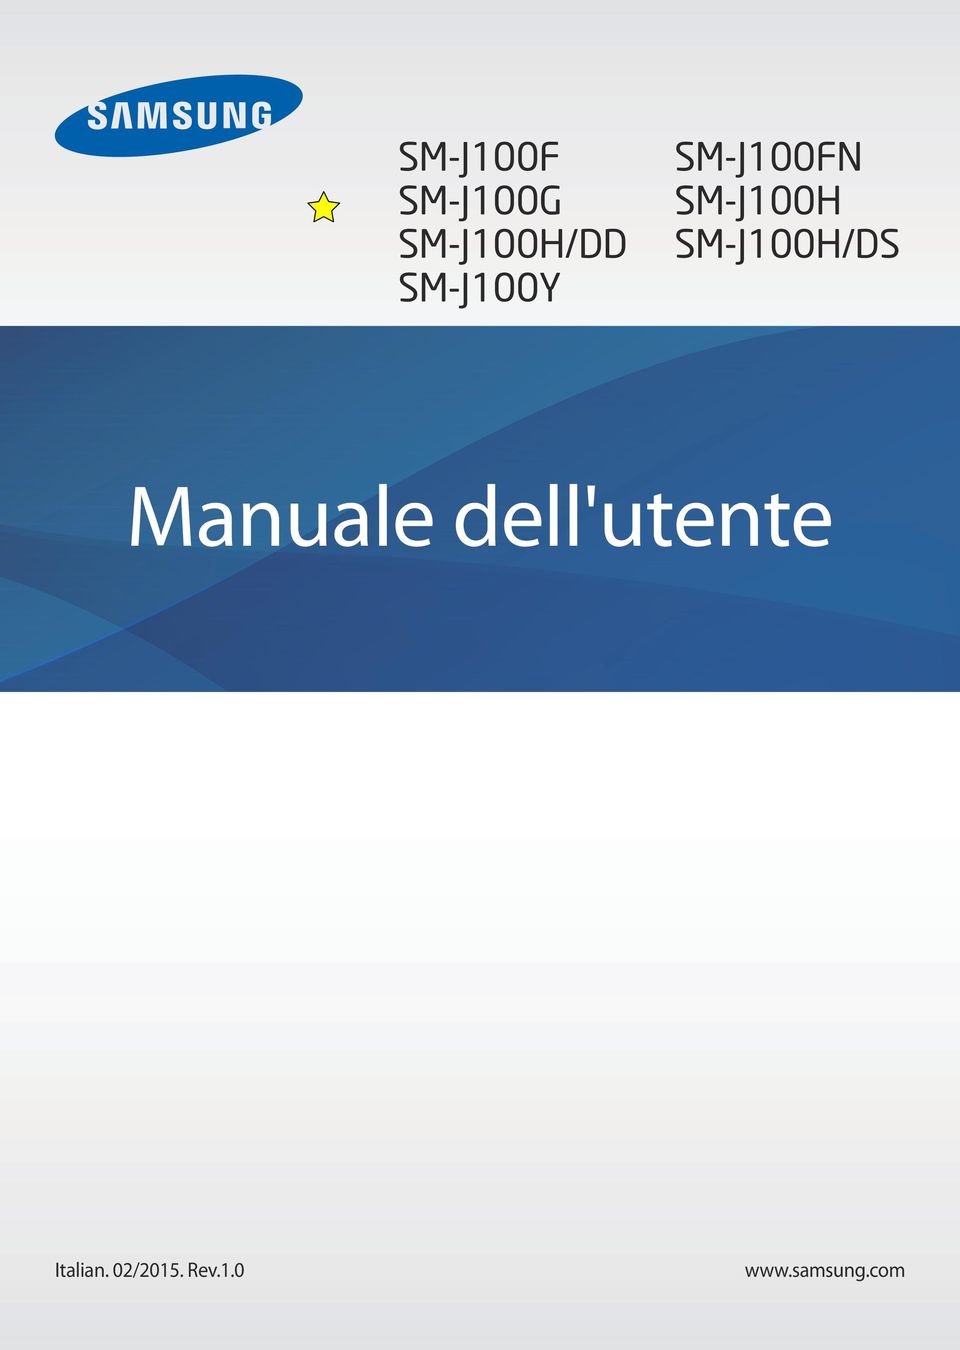 SM-J100H/DS Manuale dell'utente